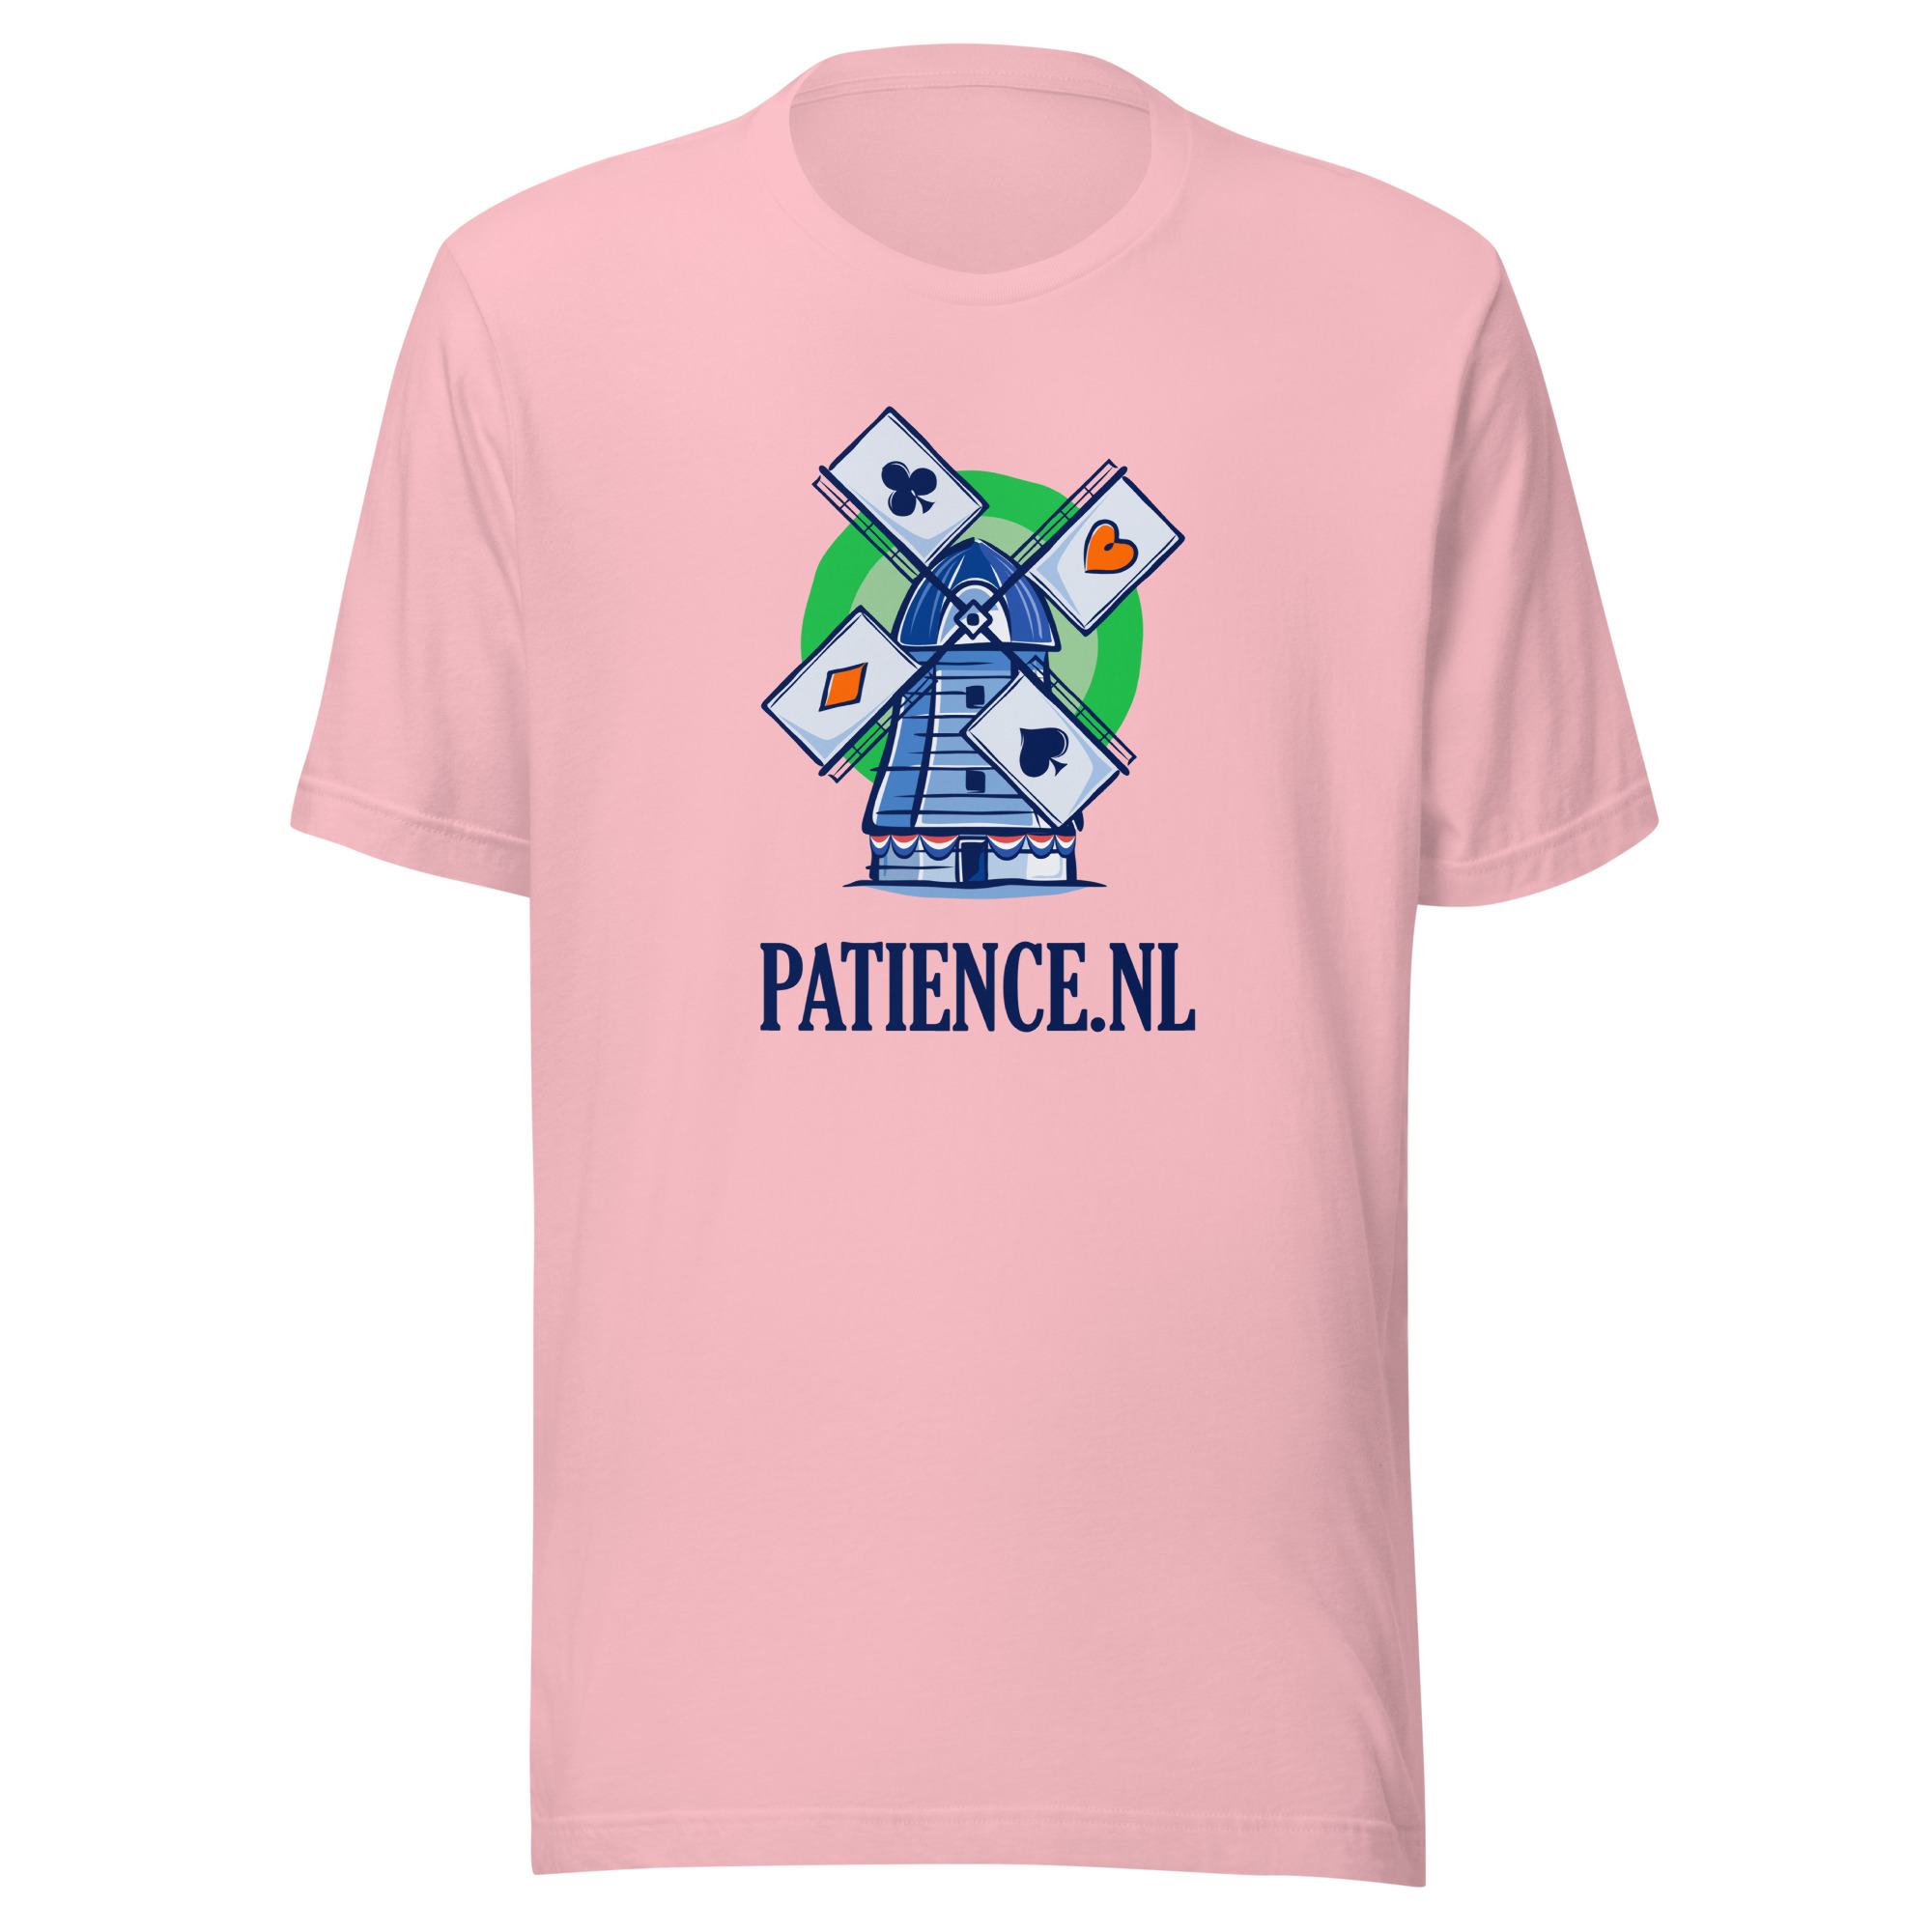 T-shirt Patience.nl Molen rose